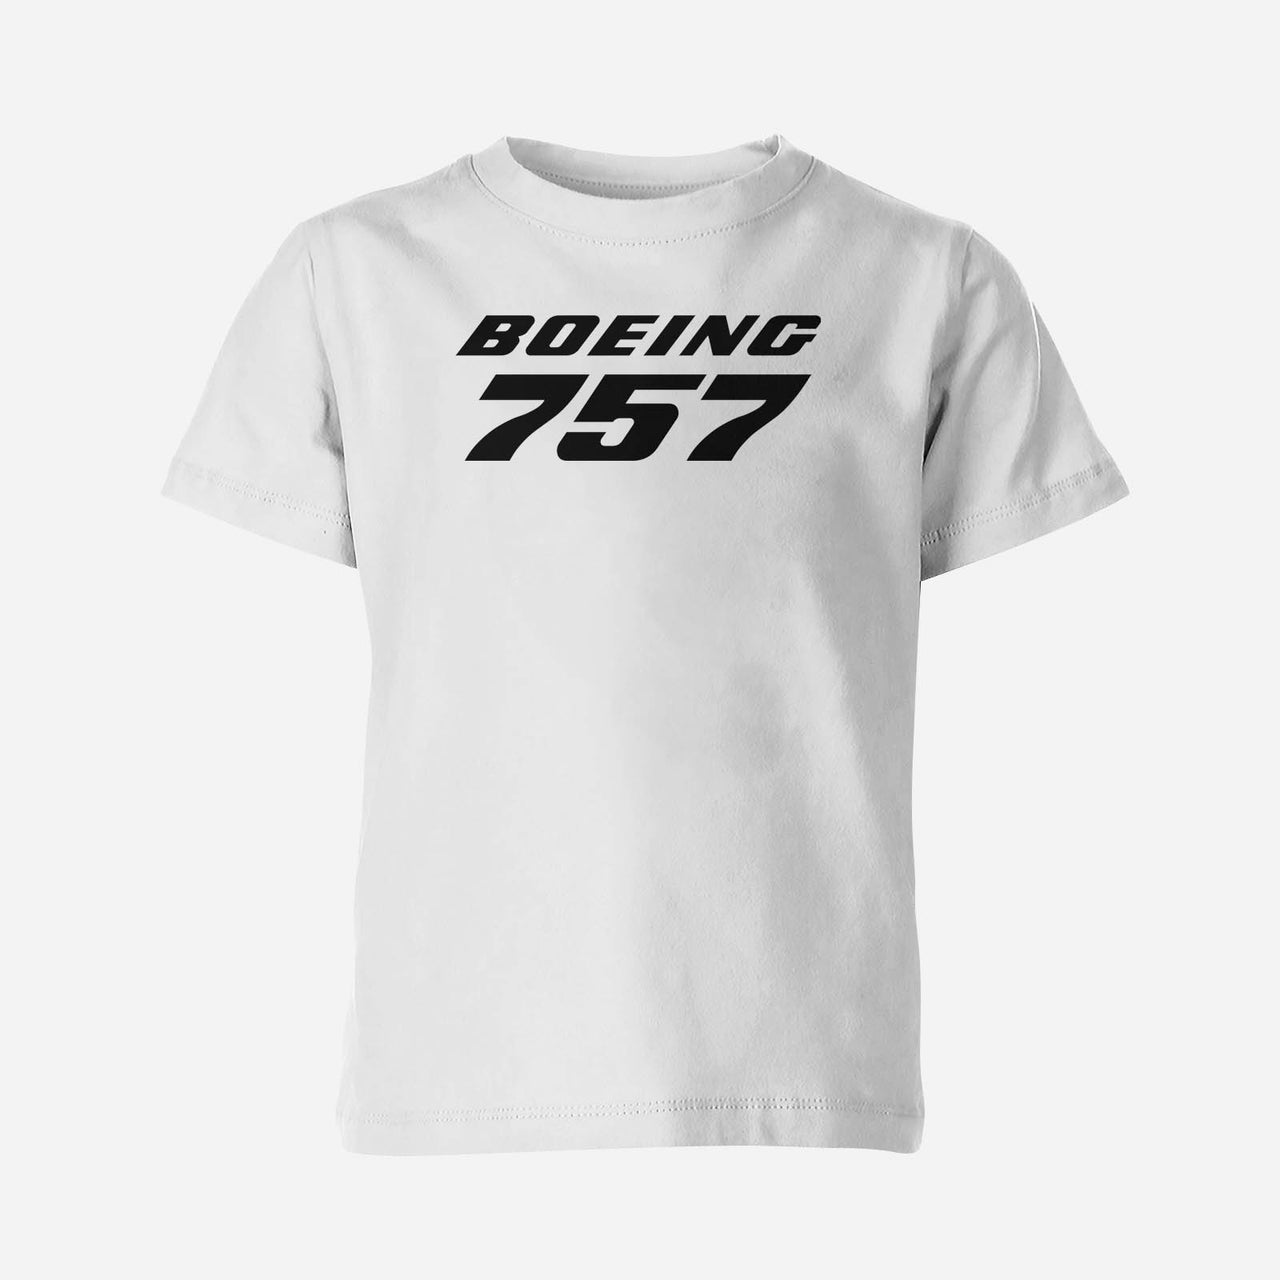 Boeing 757 & Text Designed Children T-Shirts